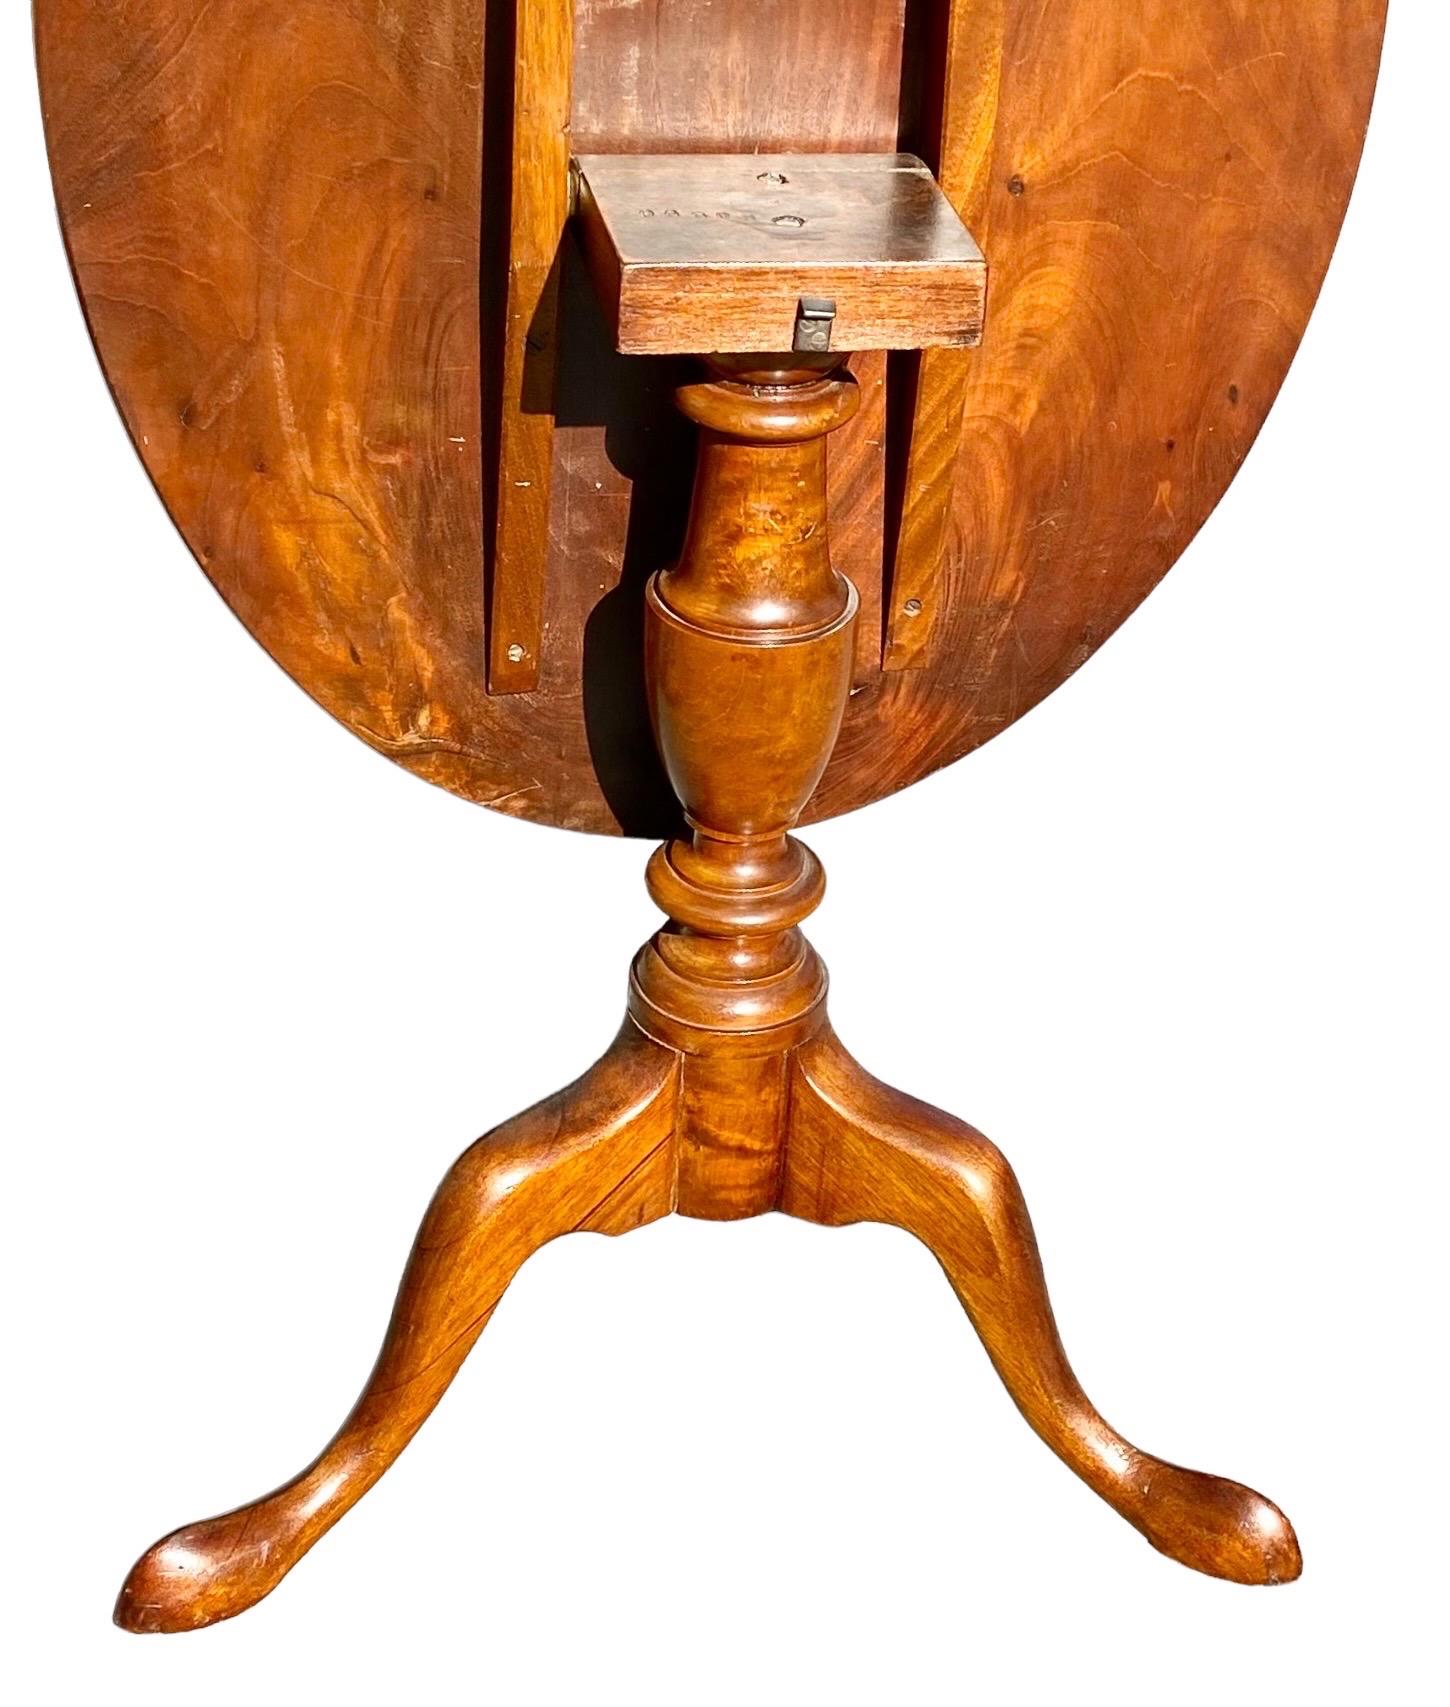 Ein feiner antiker englischer edwardianischer Beistelltisch mit Intarsien und schön gemasertem Mahagoni, circa 1900-1910, die ovale Platte auf einer gedrehten Stütze auf einem Dreifuß,  spitze pad-Füße. 

Ein schönes Beispiel für die englische